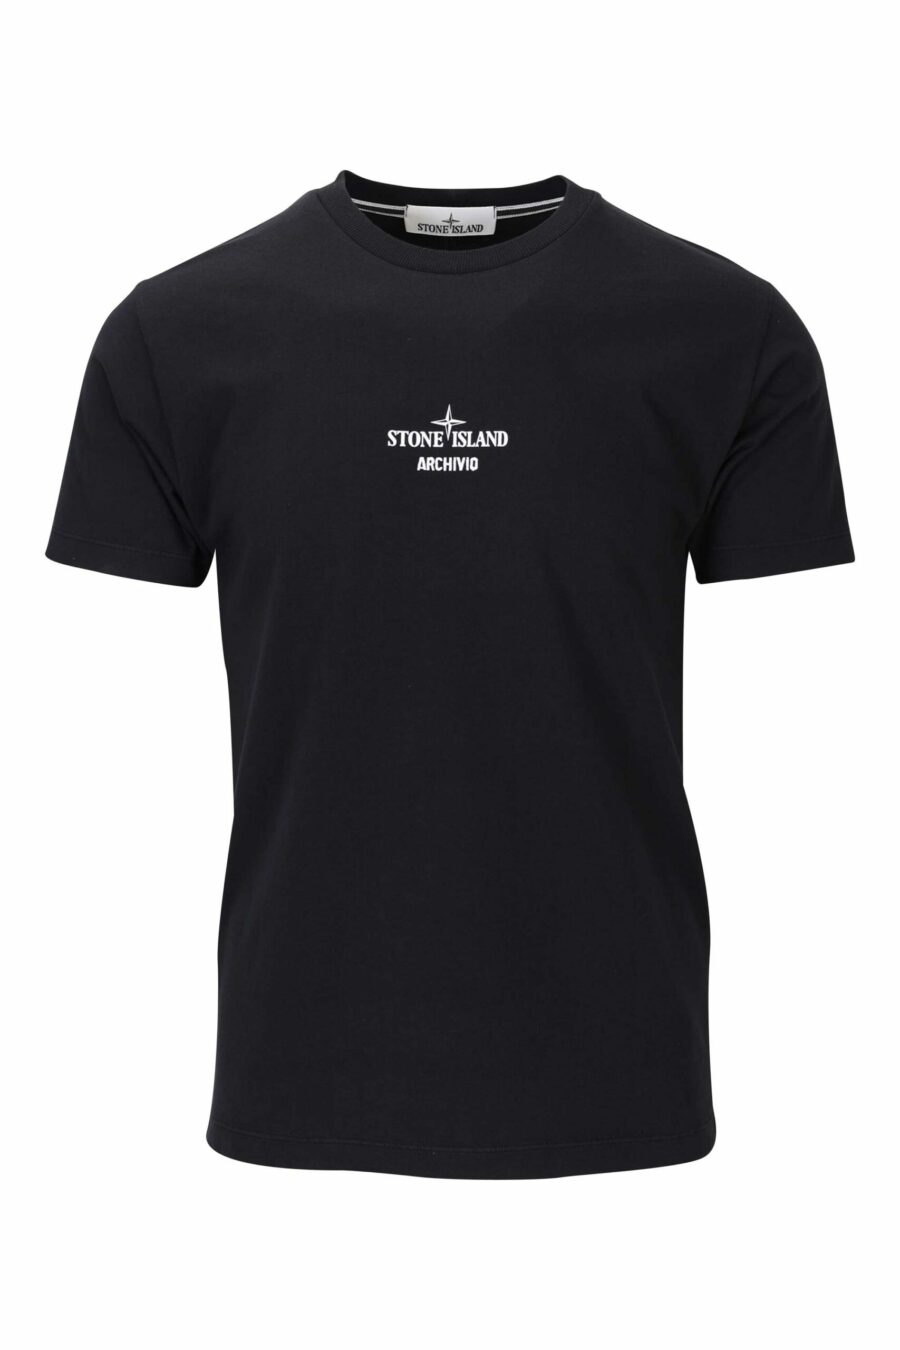 Camiseta negra con logo centrado y estampado detrás - 8052572755927 scaled